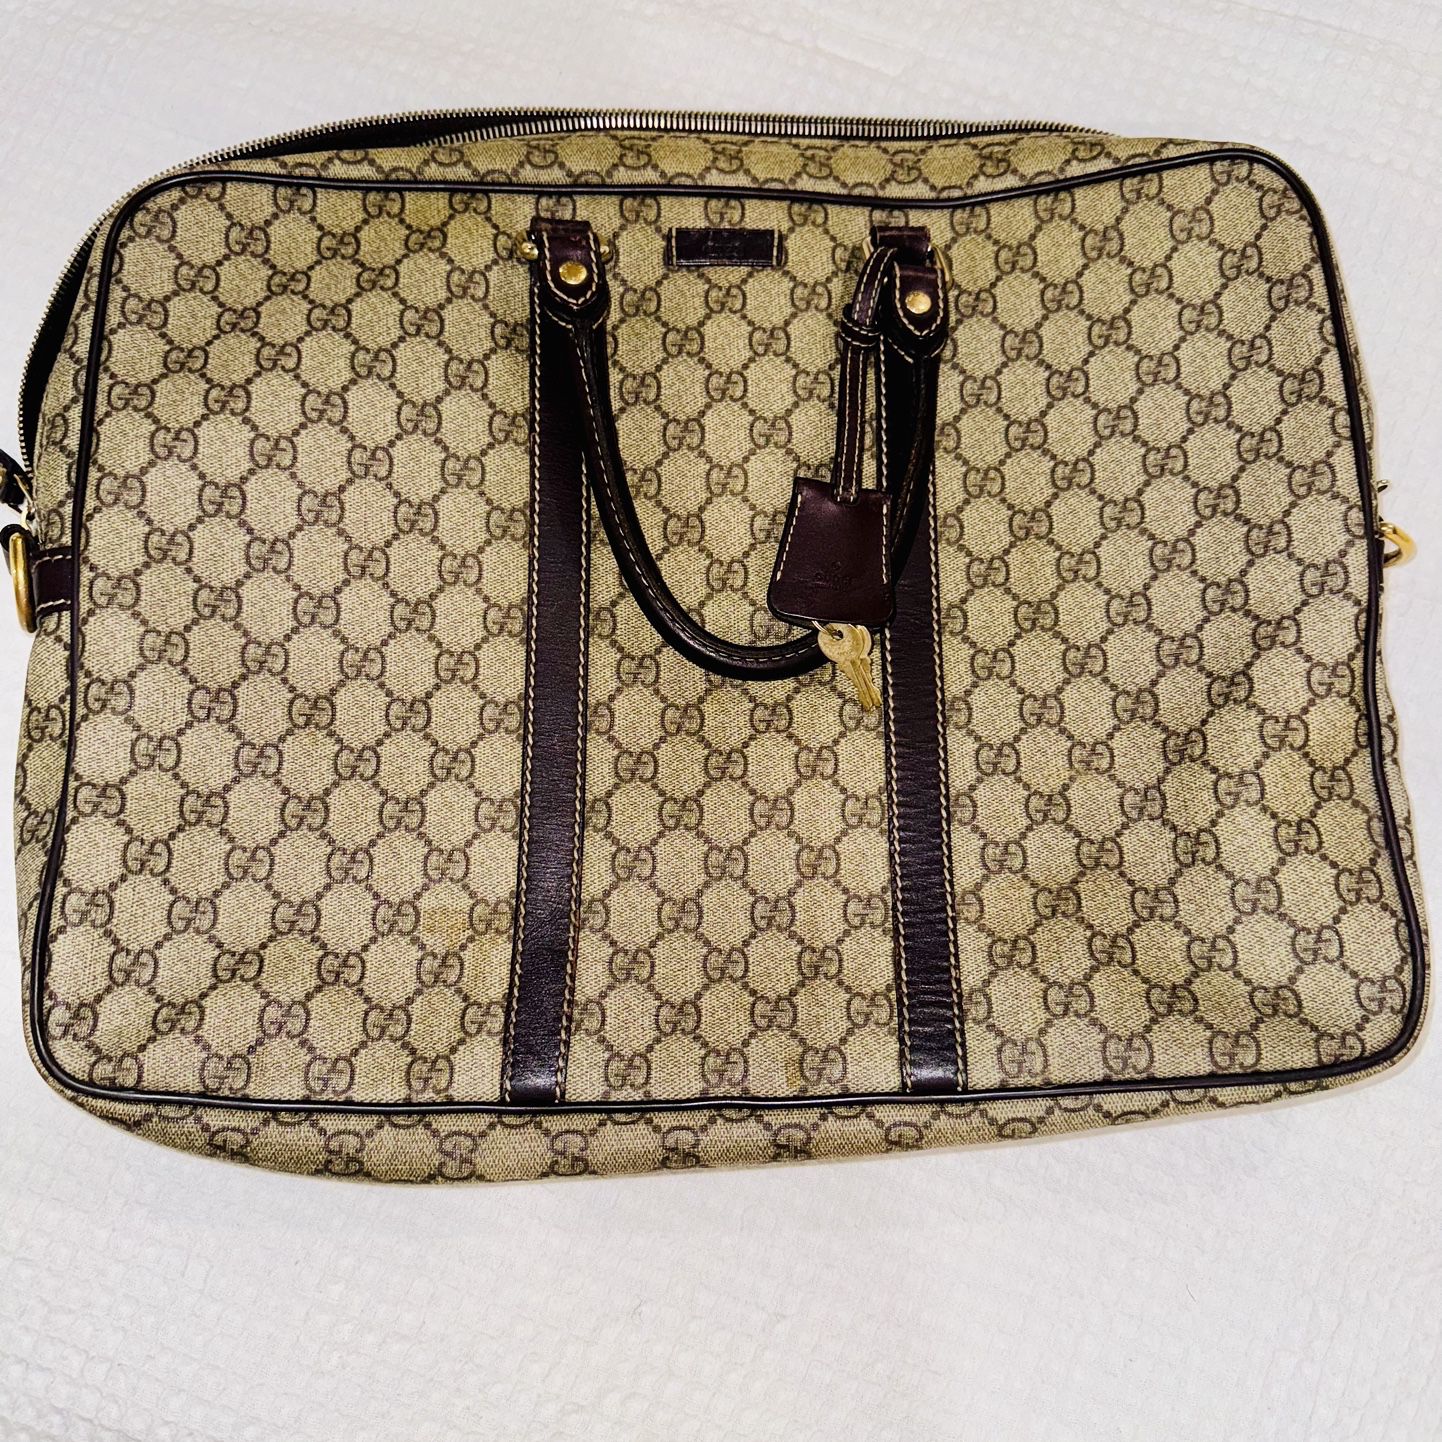  $800 OBO…Gucci Men's Black GG Supreme Canvas Briefcase